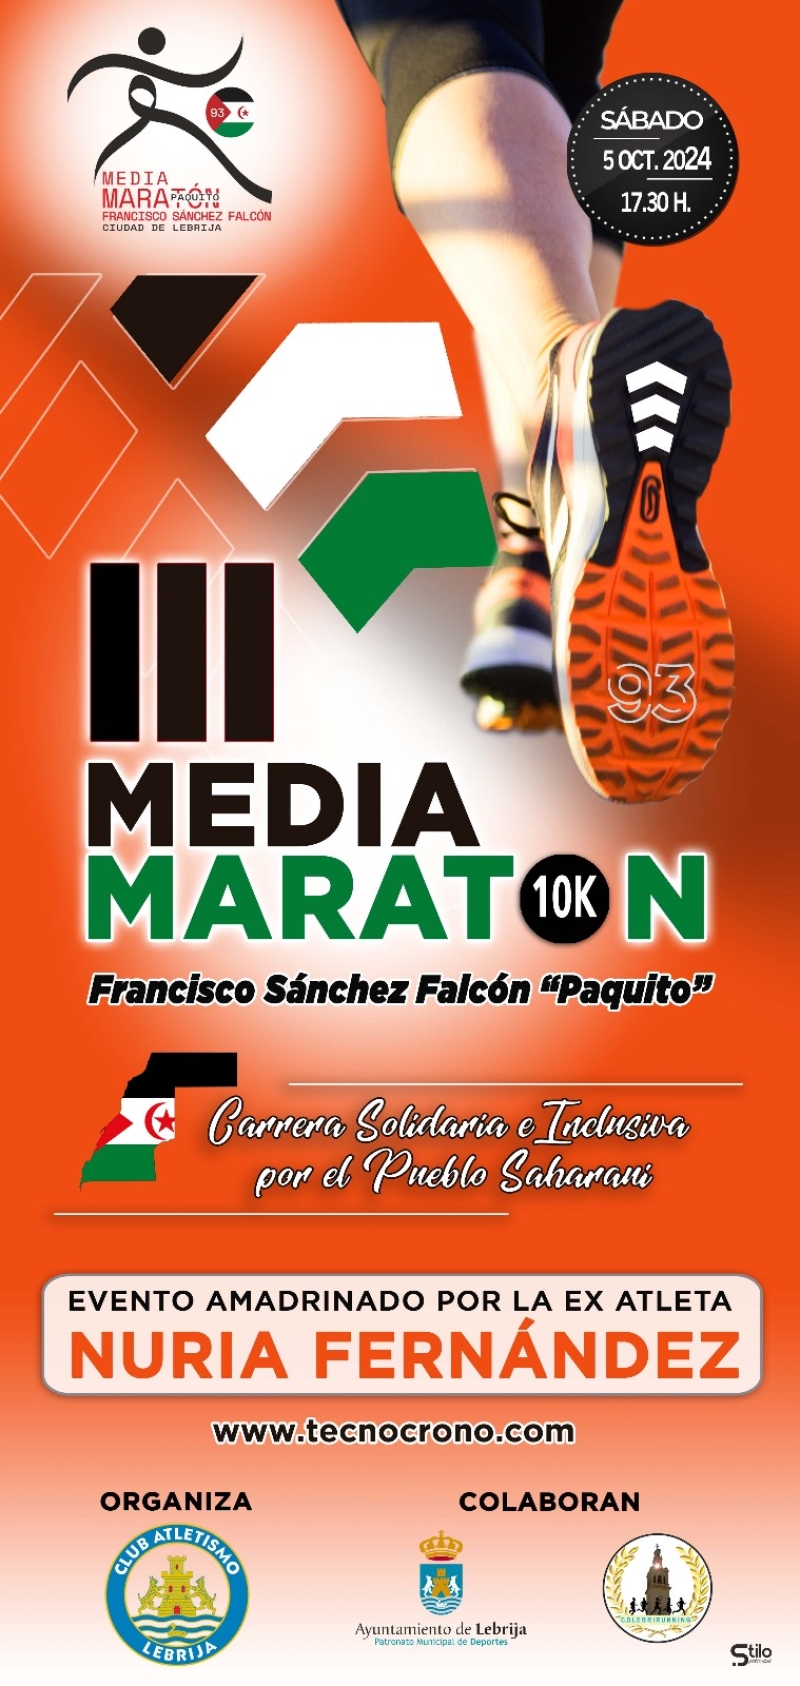 Cartel del evento III MEDIA MARATON FRANCISCO SANCHEZ FALCON